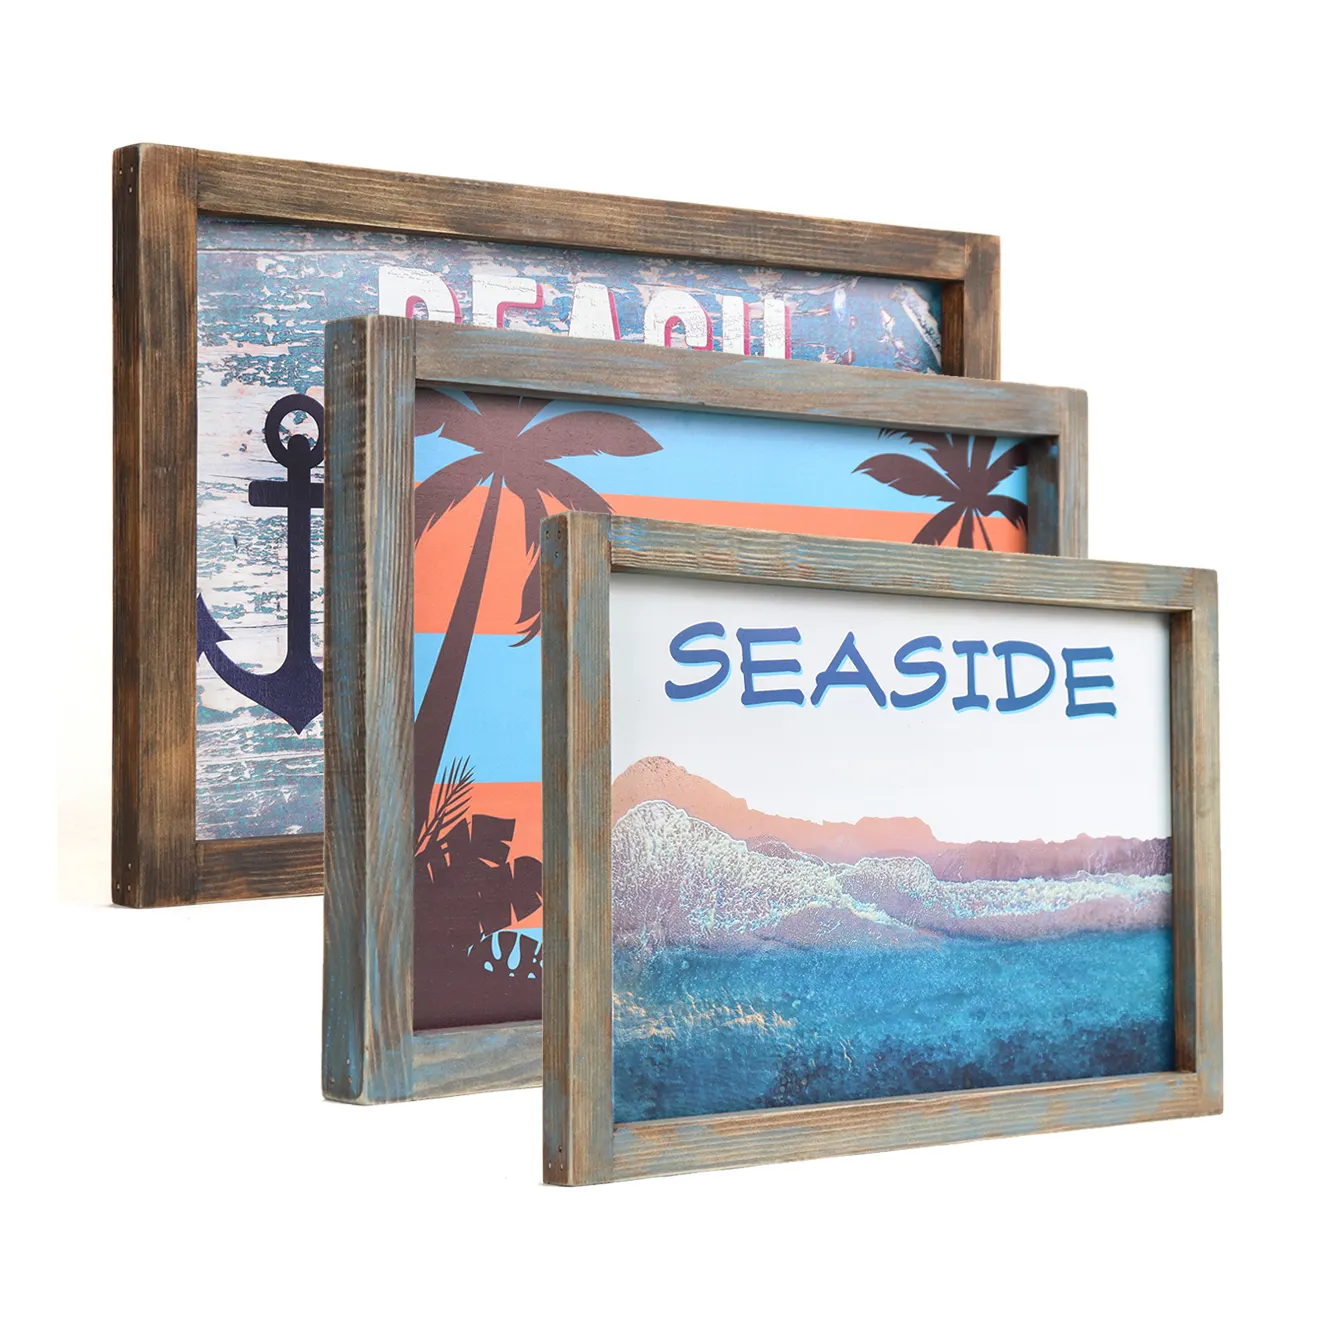 Vintage bord de mer 12x18in Plaque en bois côtier bois signe plage bord de mer Art décor tendance thème nautique